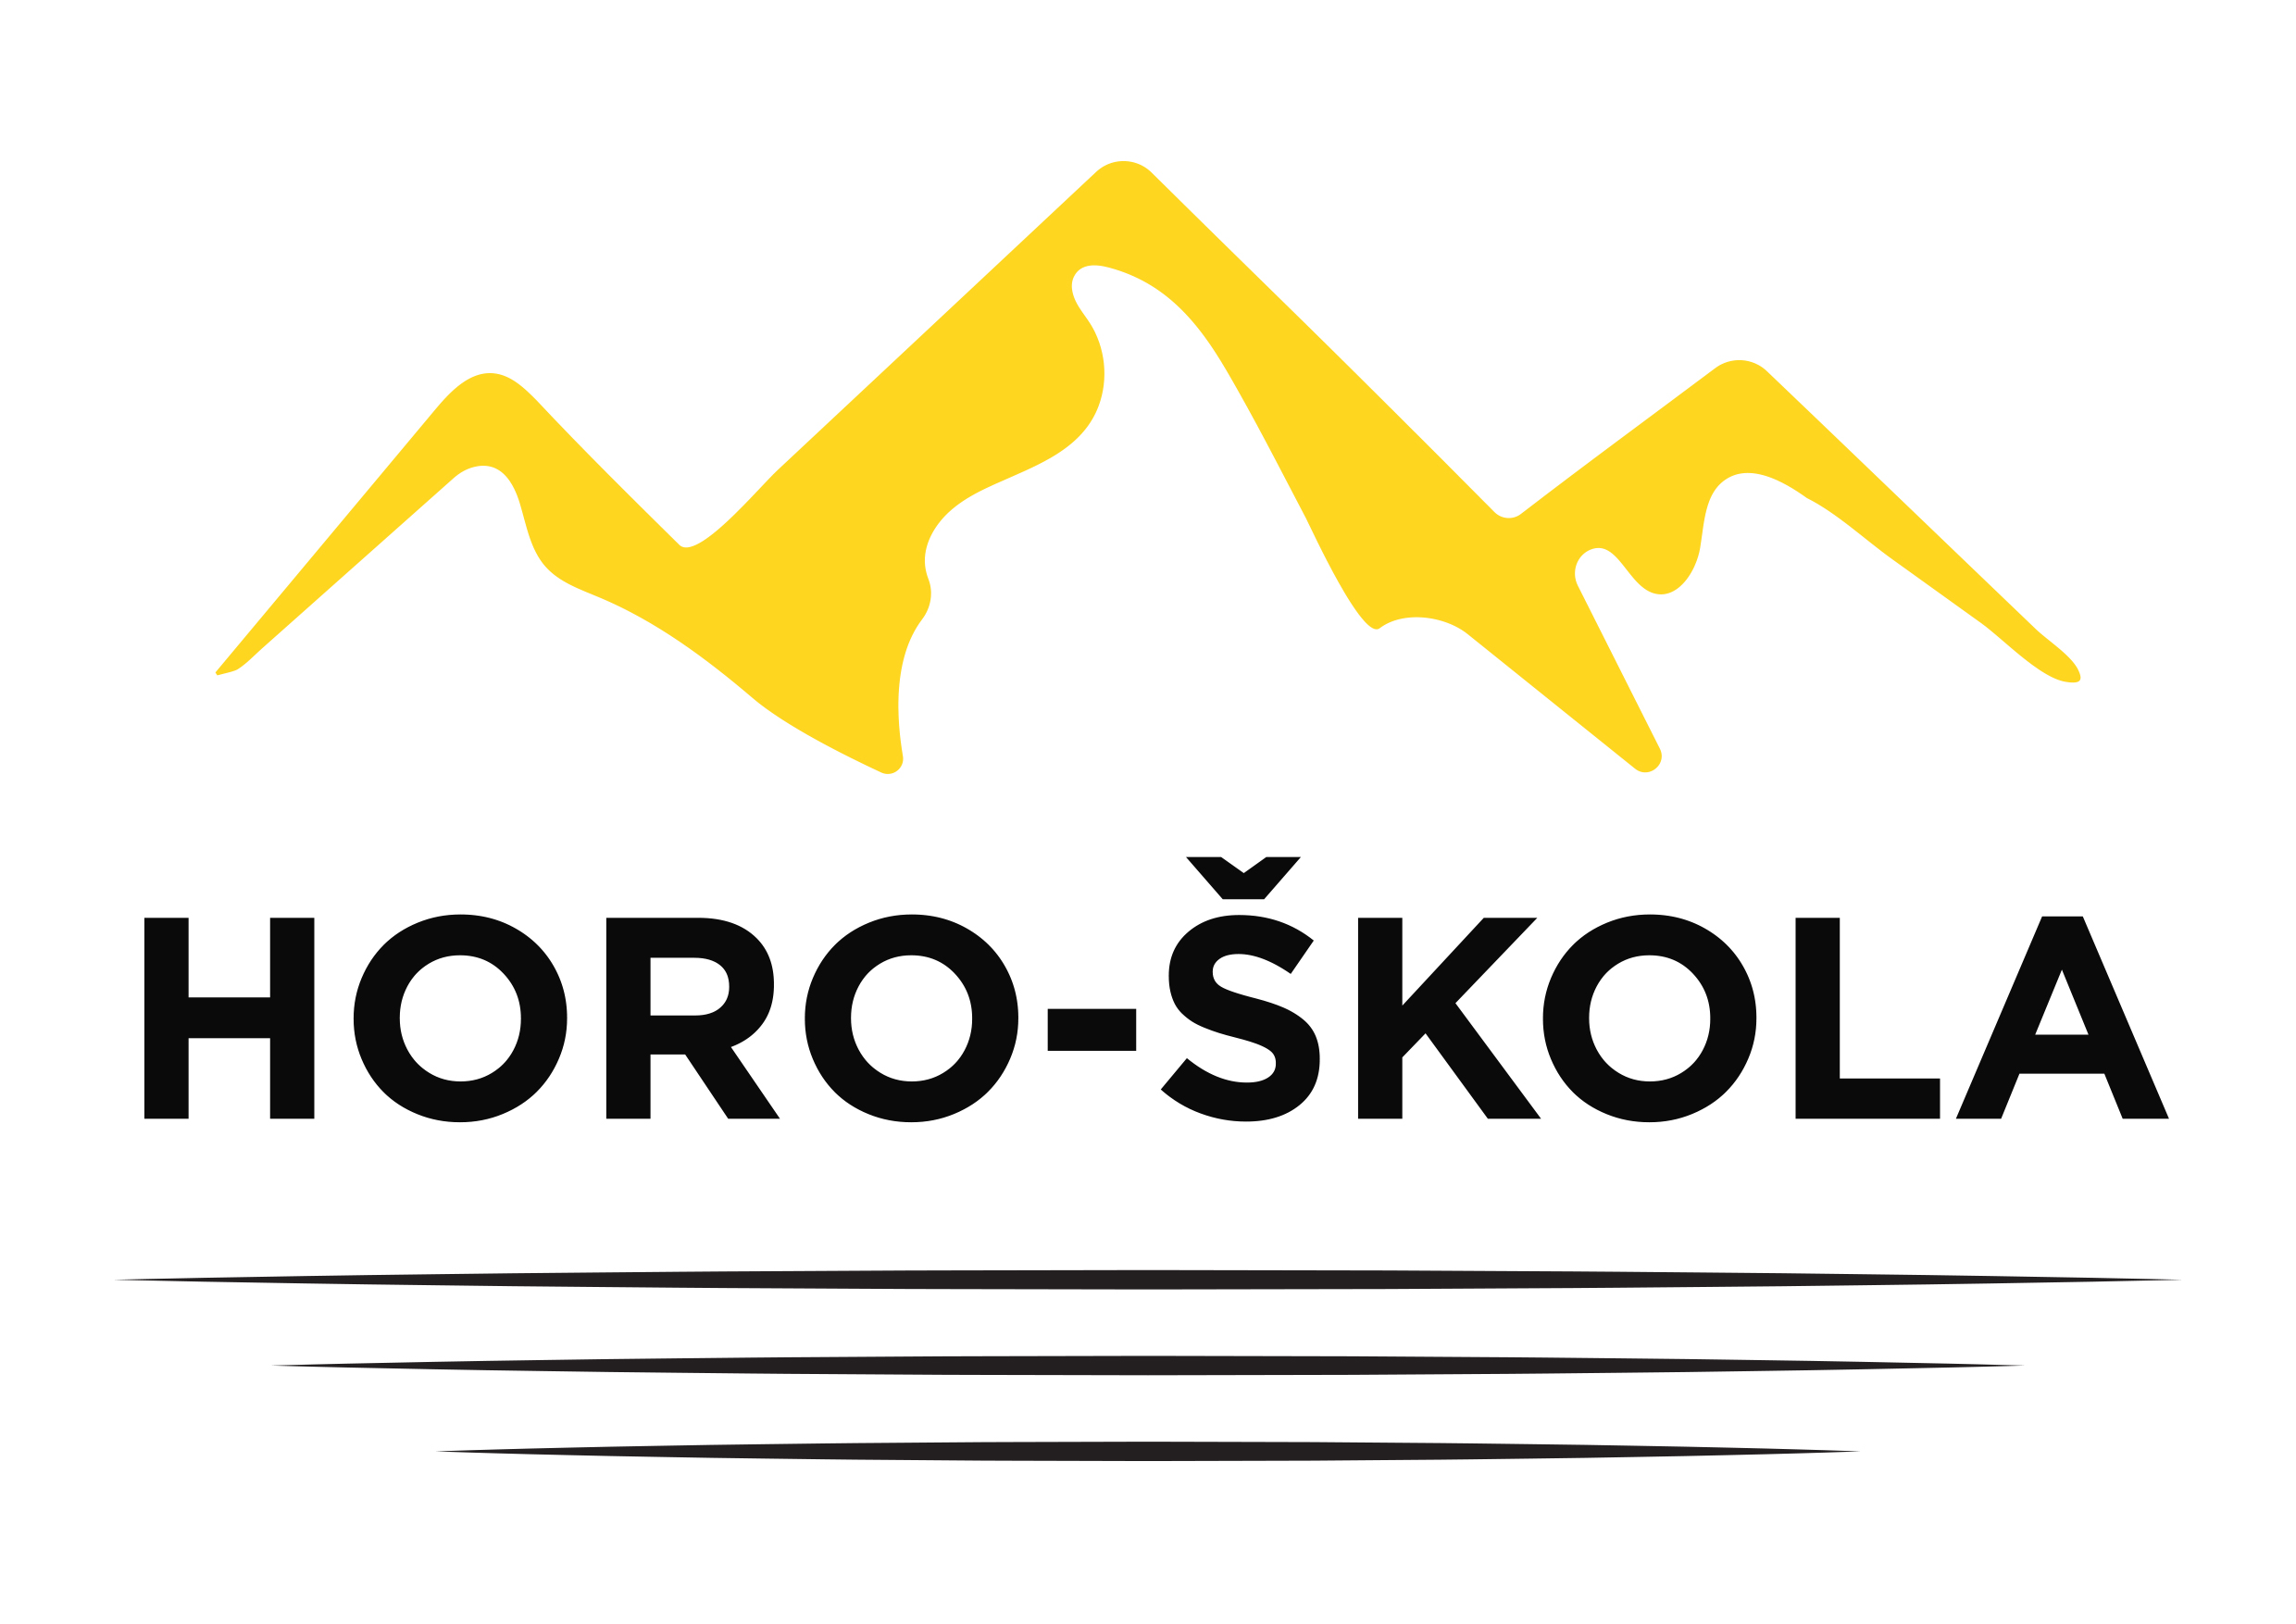 horo-skola-logo-1-blk